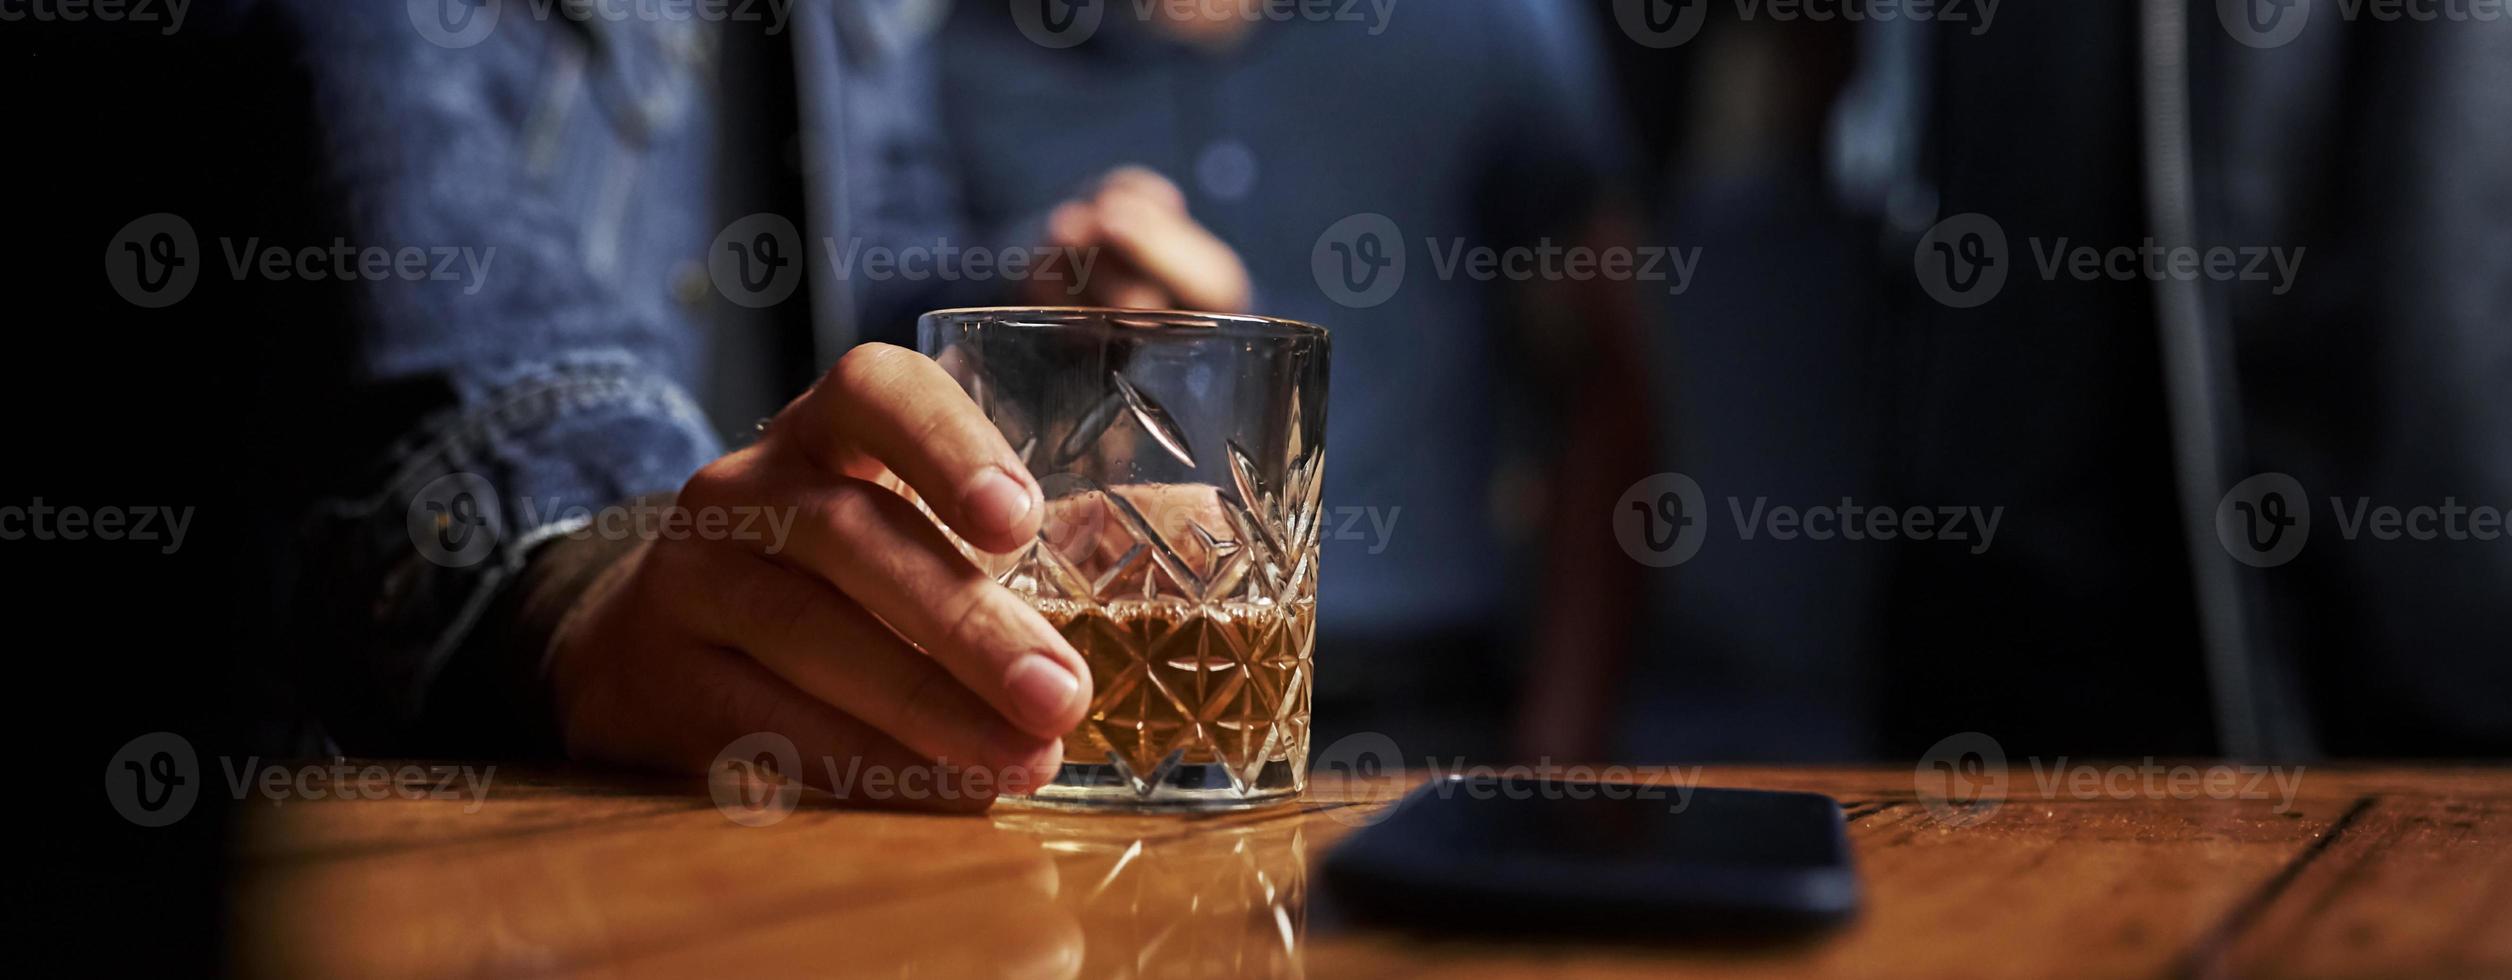 vista de cerca del vidrio con alcohol. la mano del hombre lo sostiene. teléfono inteligente sobre la mesa. foto horizontal